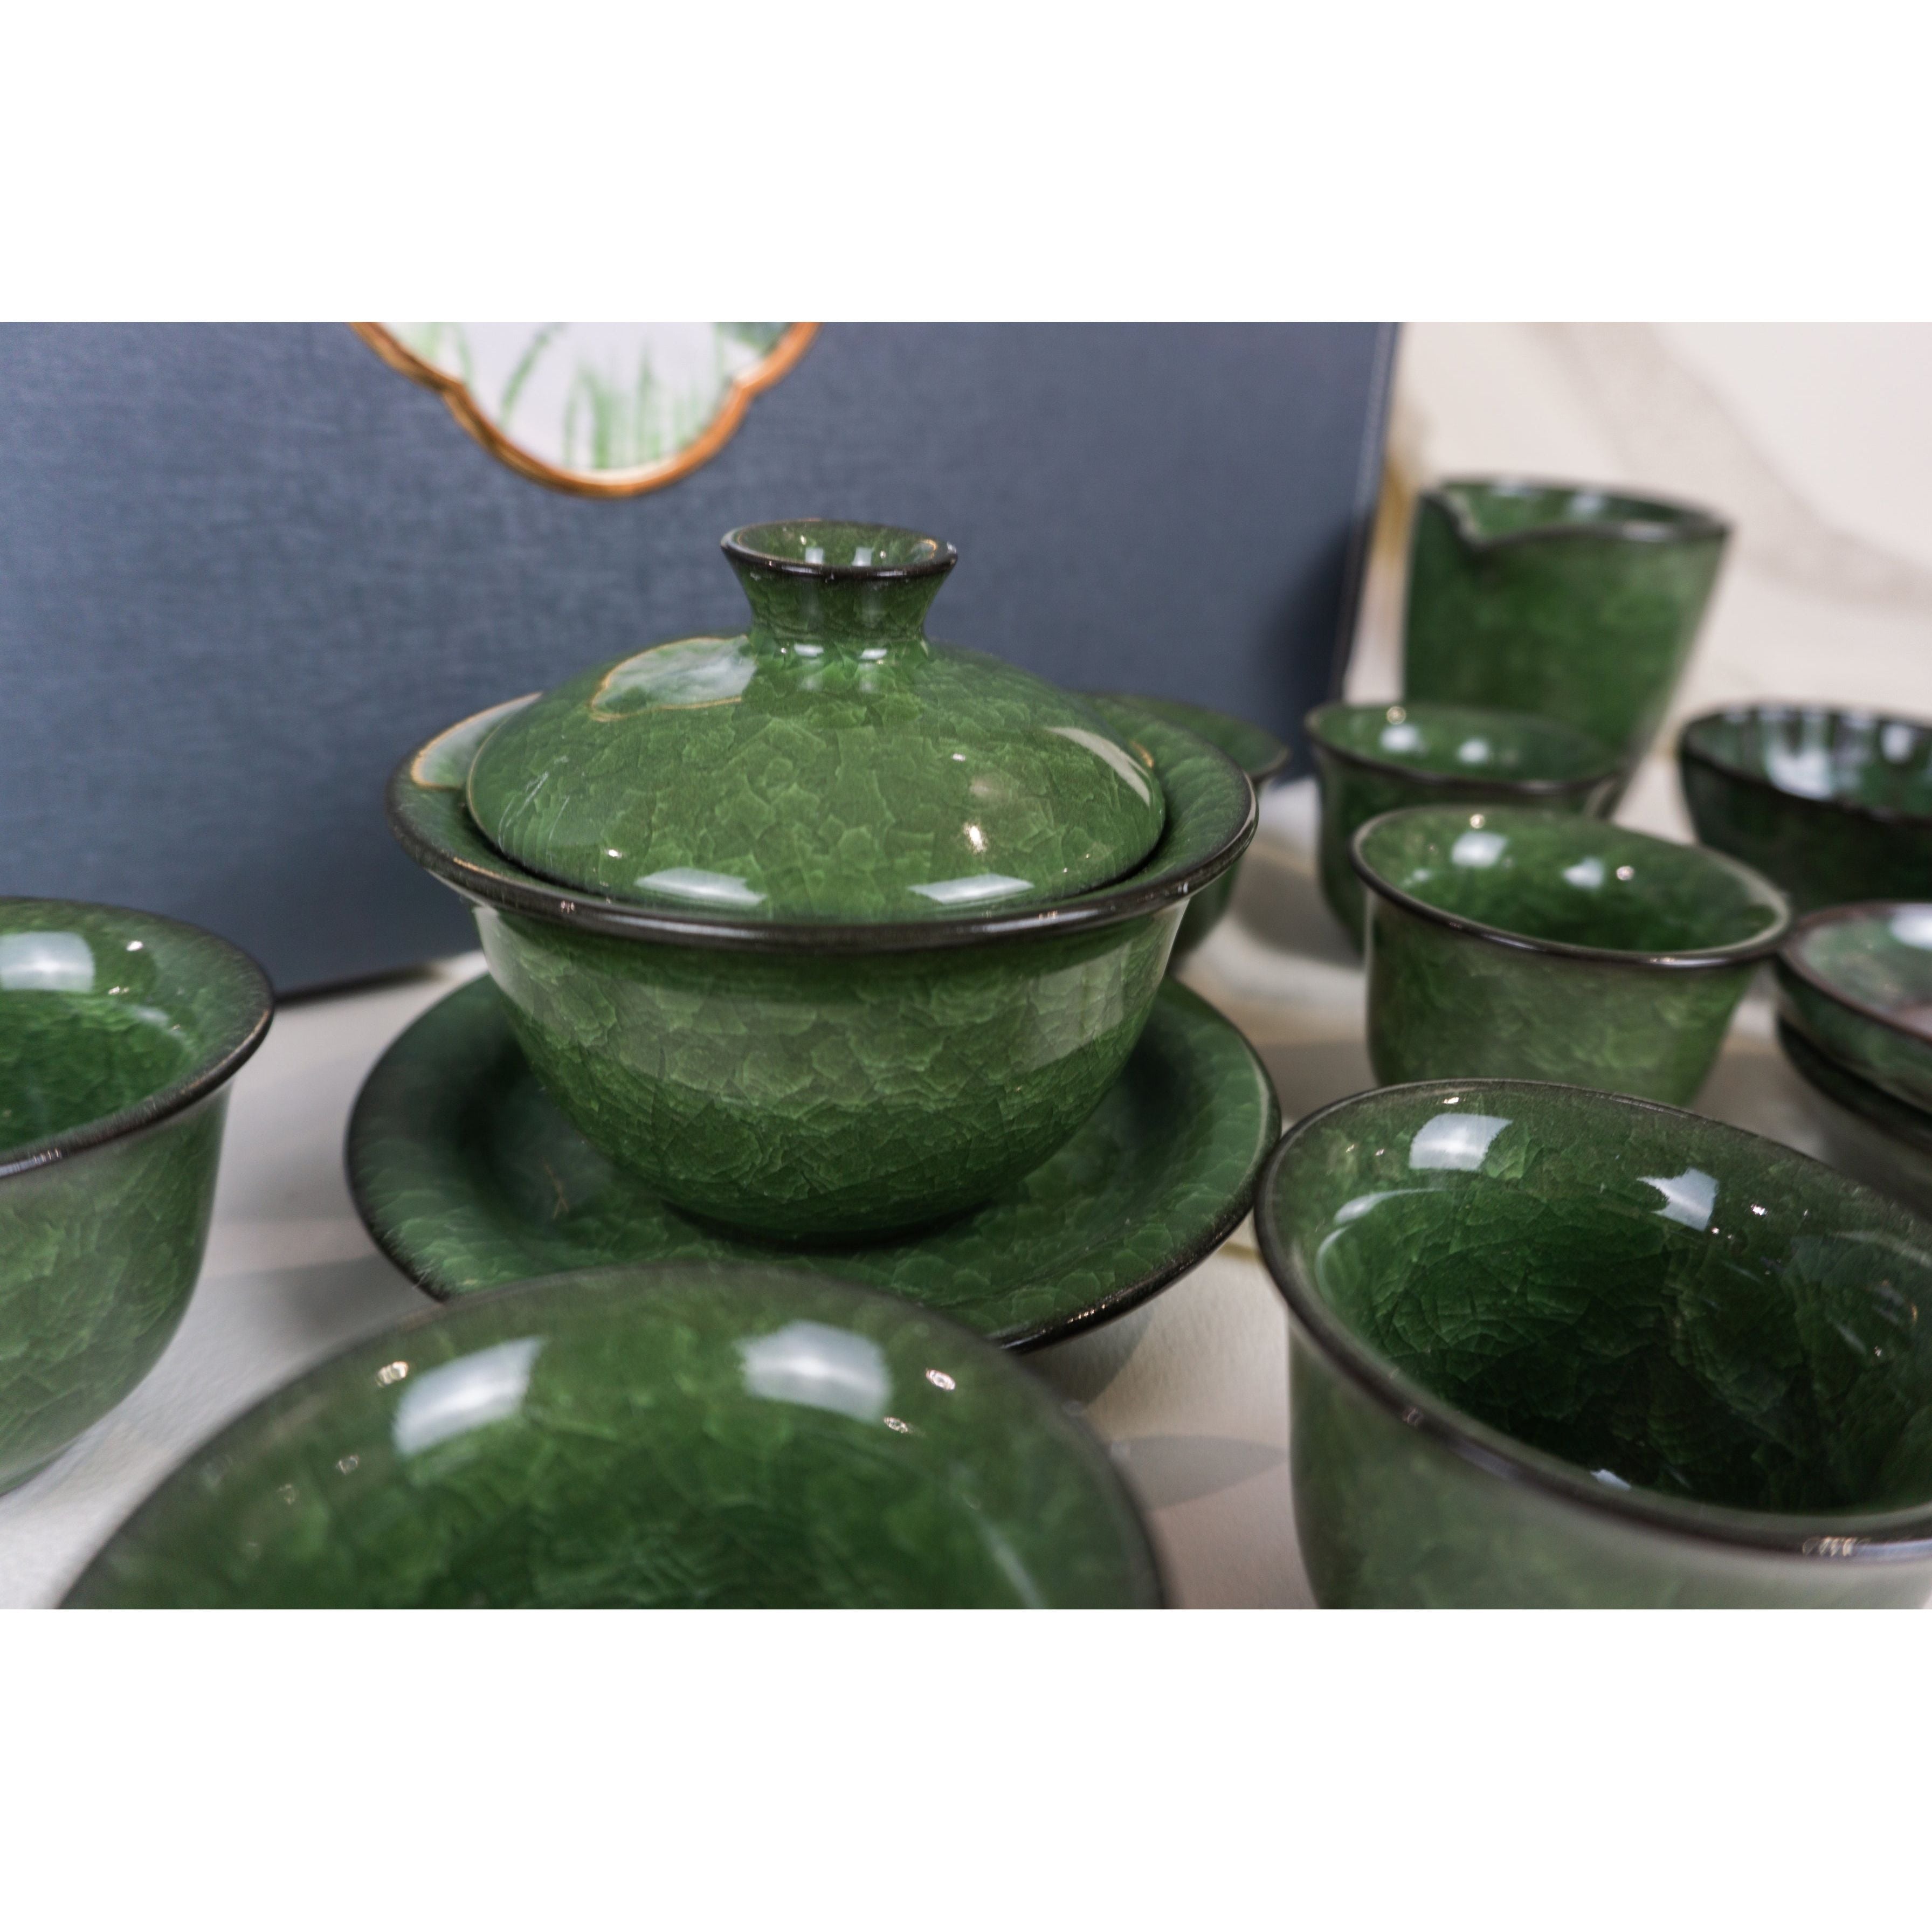 Juego de ceremonia del té, porcelana glaseada con hielo verde, estuche de transporte